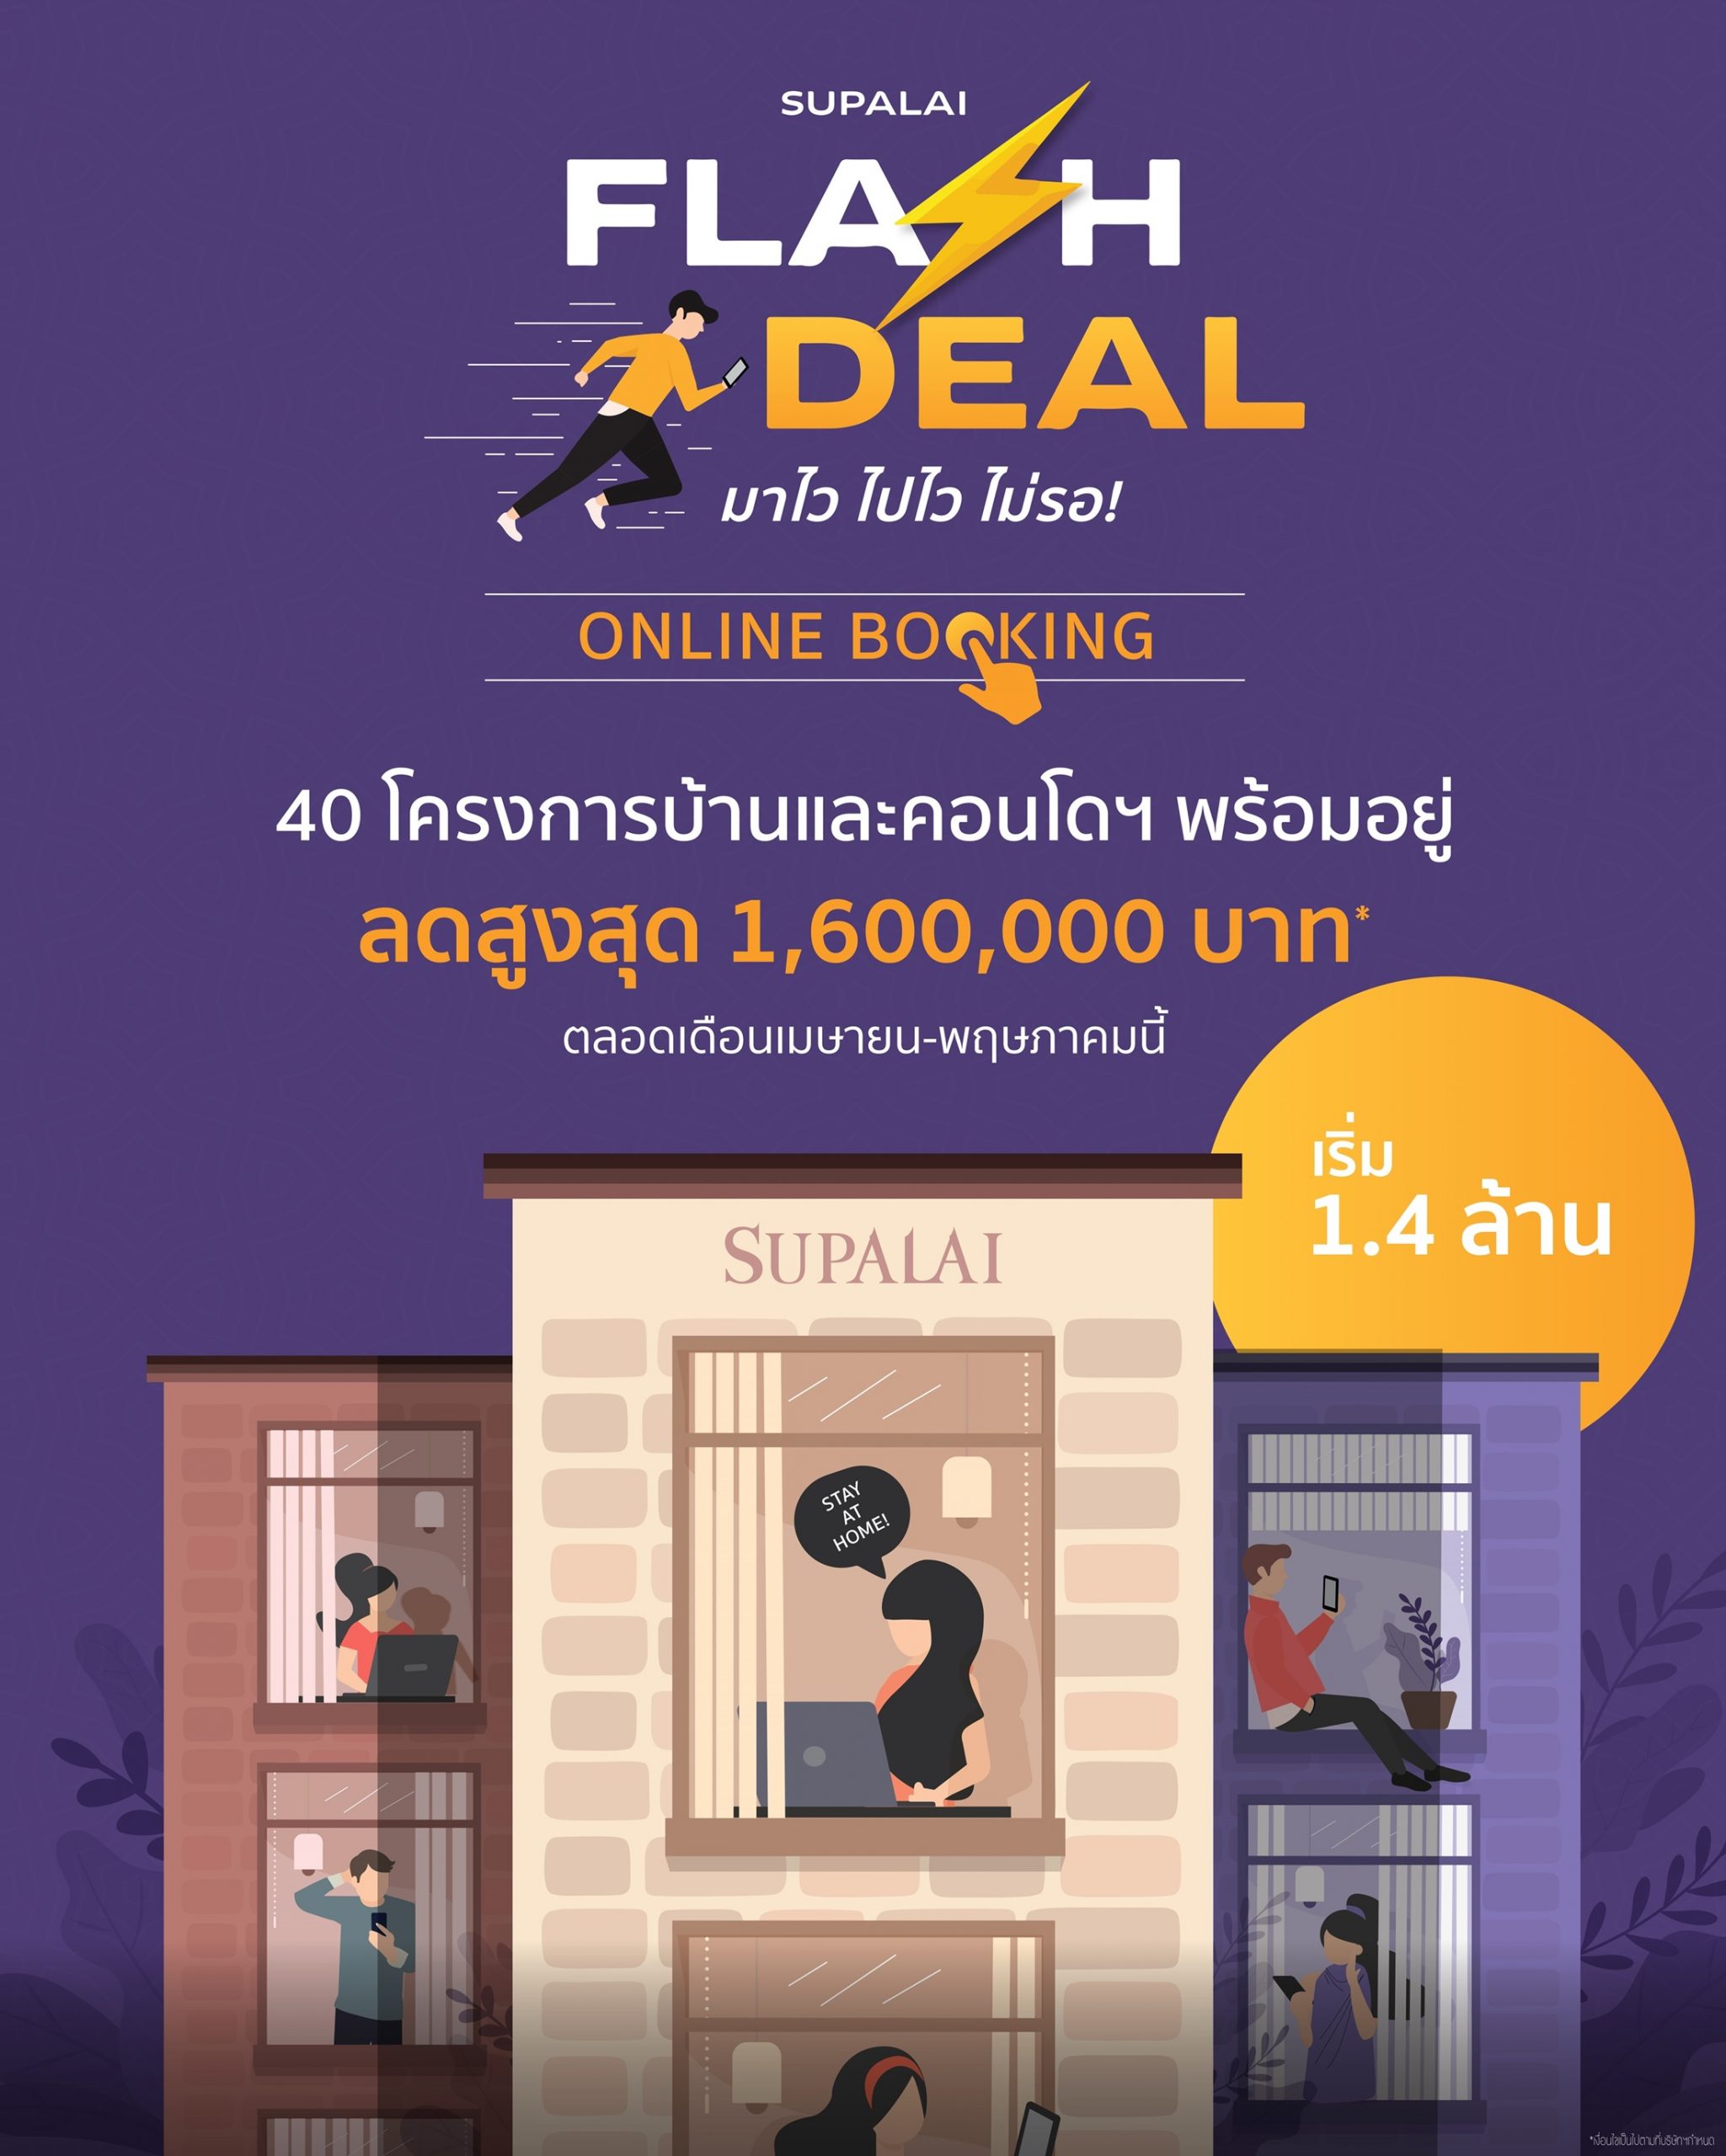 ศุภาลัย เพิ่มช่องทางขายคอนโดฯ - บ้าน แบบออนไลน์ 24 ชั่วโมง ส่งแคมเปญ Flash Deal! มาไว ไปไว ไม่รอ! กับ Supalai Online